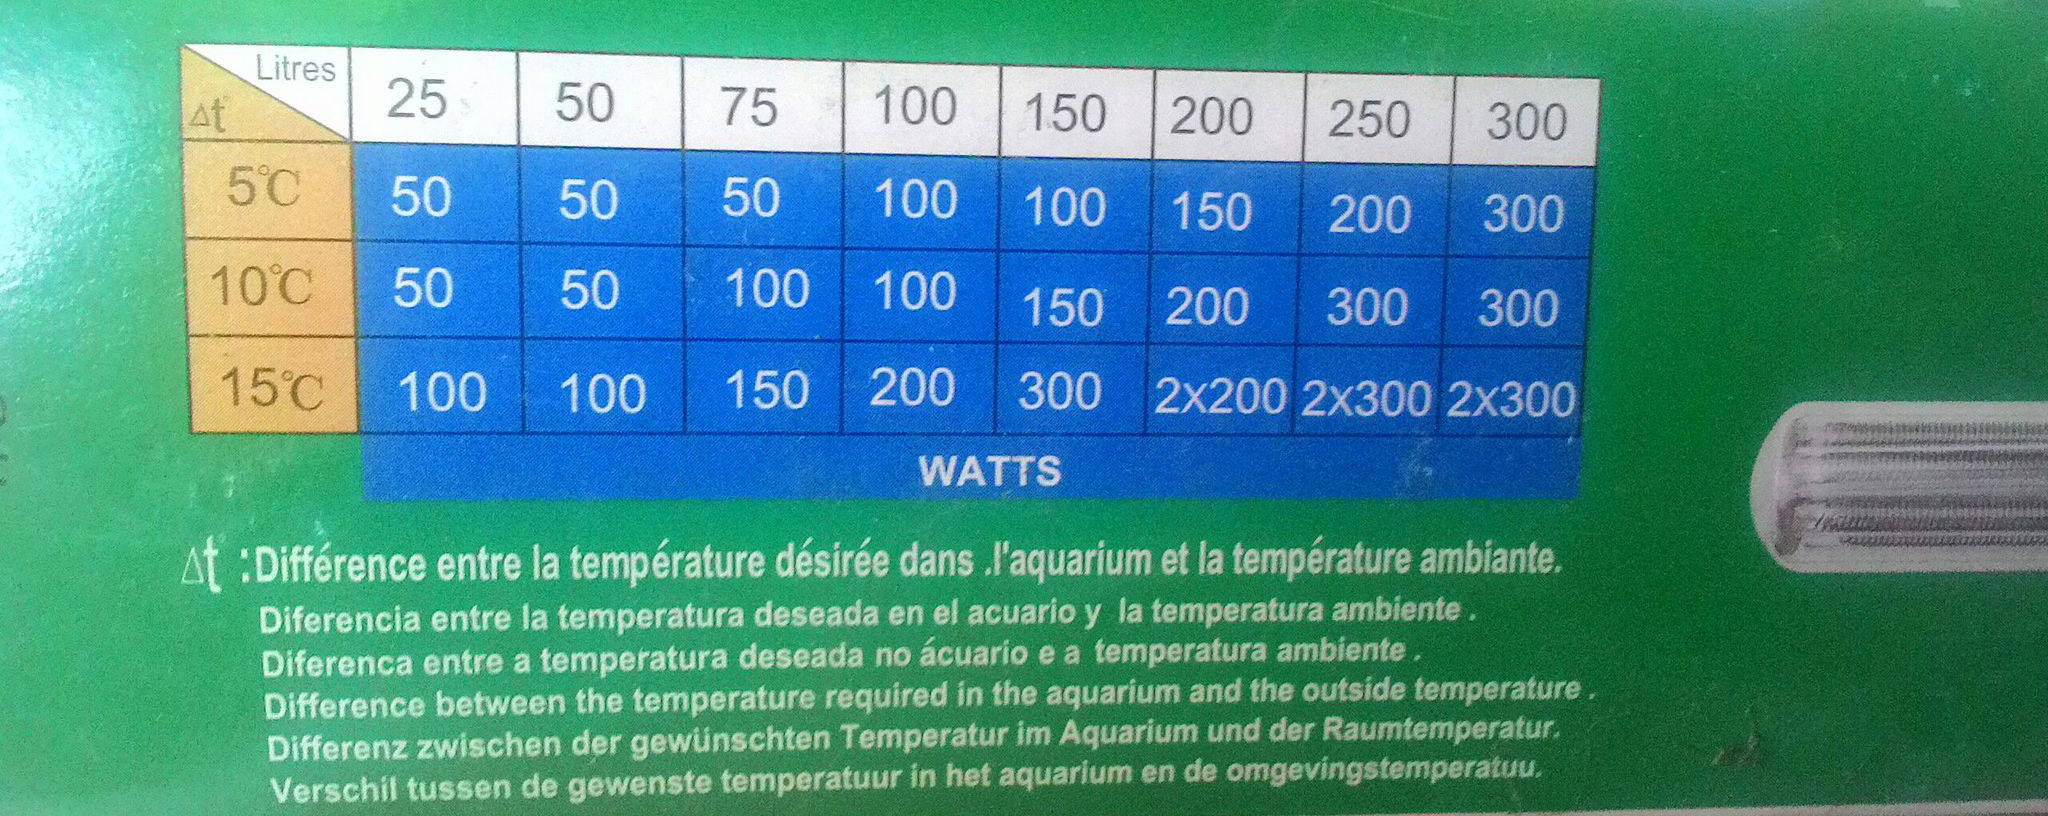 Atman AT încălzitoare termostatice pentru acvariu - zoom